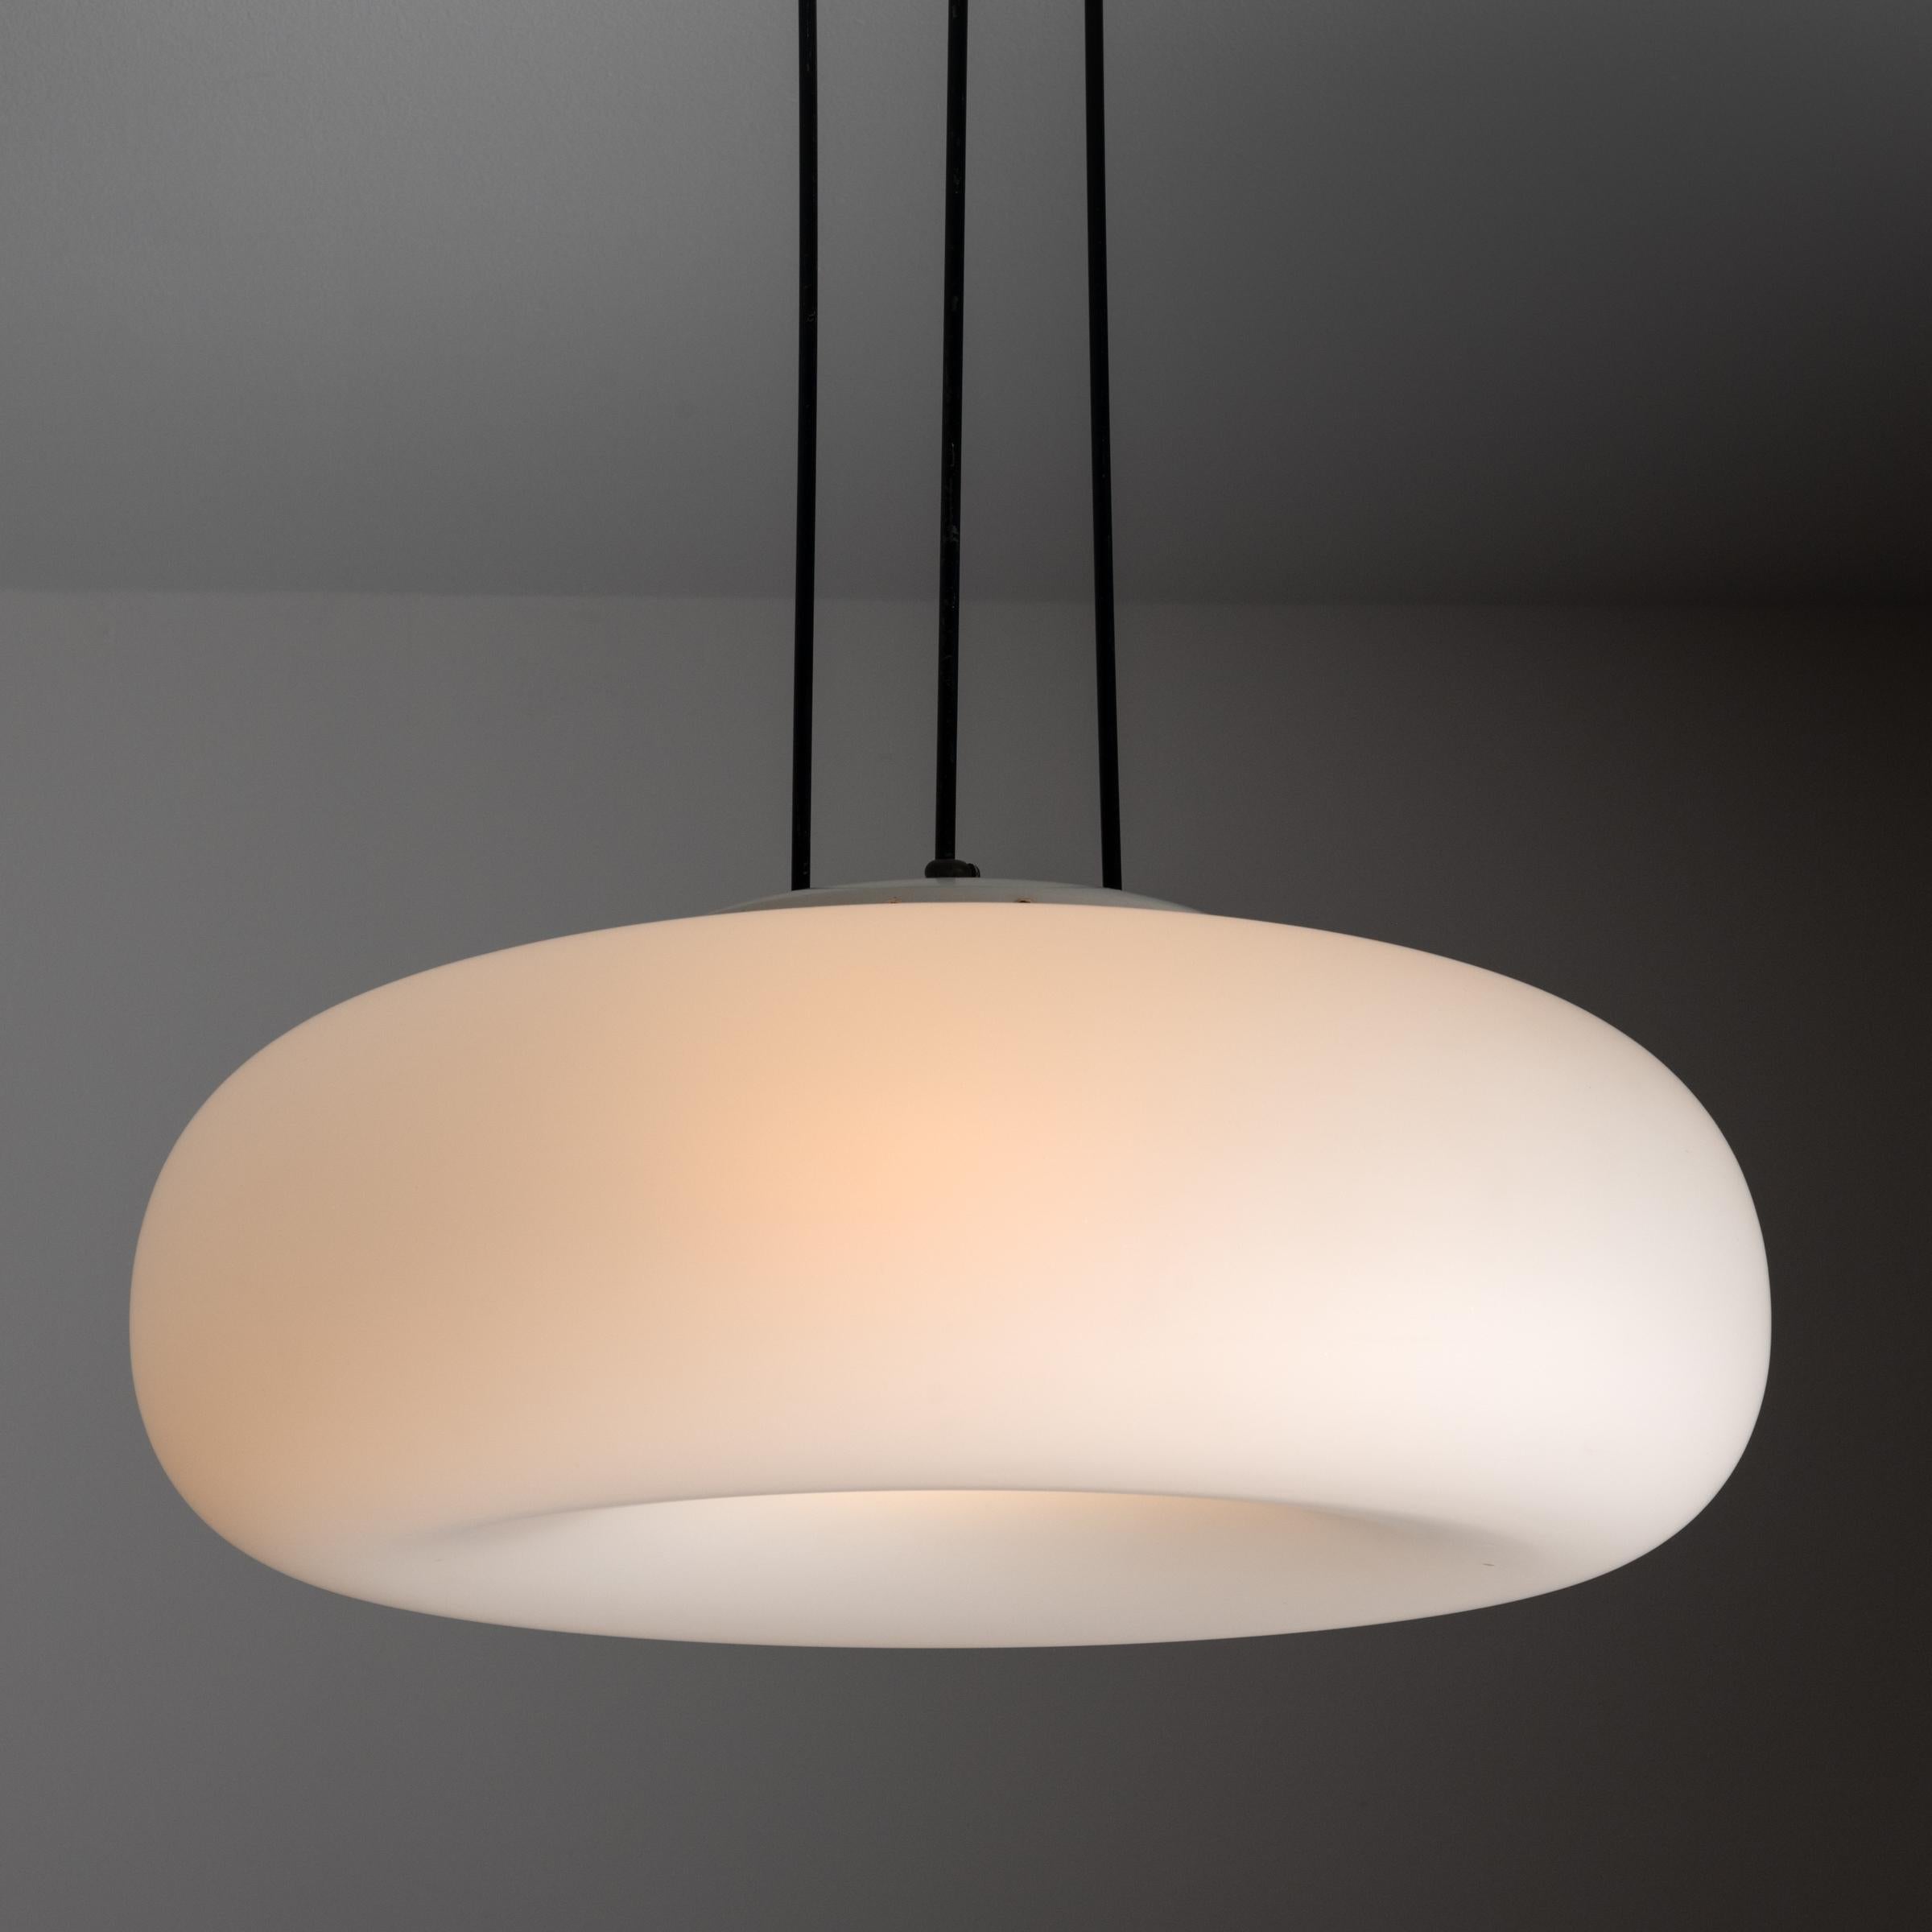 Italian Model 2356 Ceiling Light by Max Ingrand for Fontana Arte